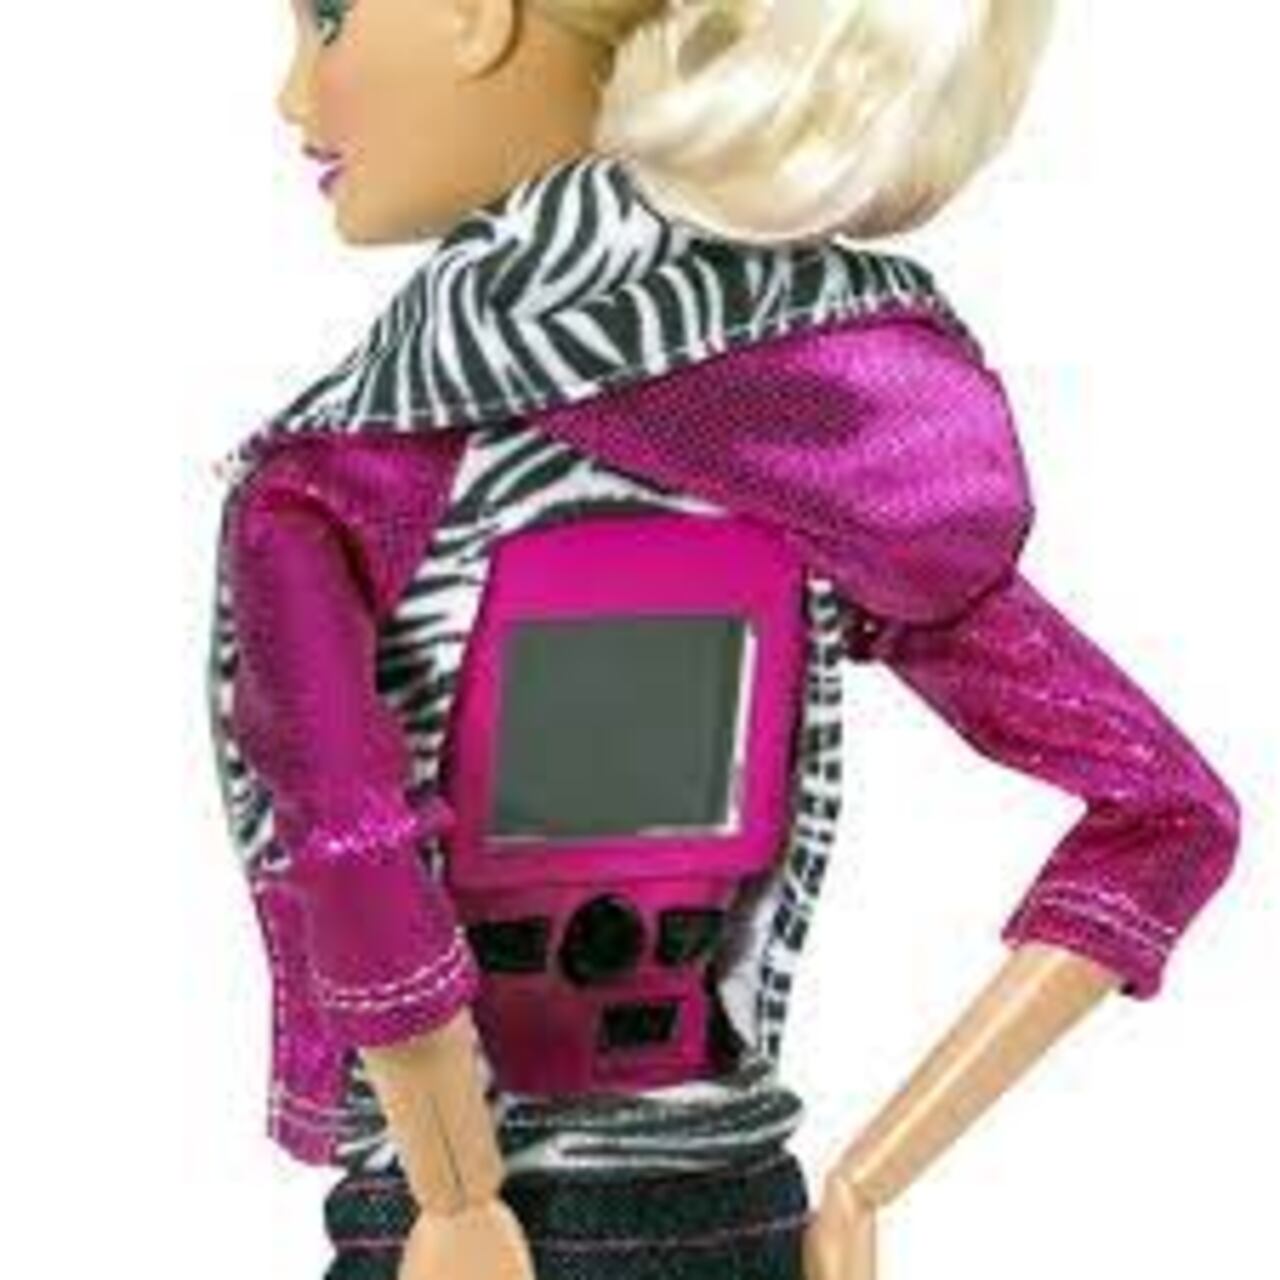 Barbie Video Girl fue una muñeca innovadora que contaba con una cámara de vídeo en su colgante y una pantalla en la espalda, permitiendo a los niños ver lo que grababa su muñeca.